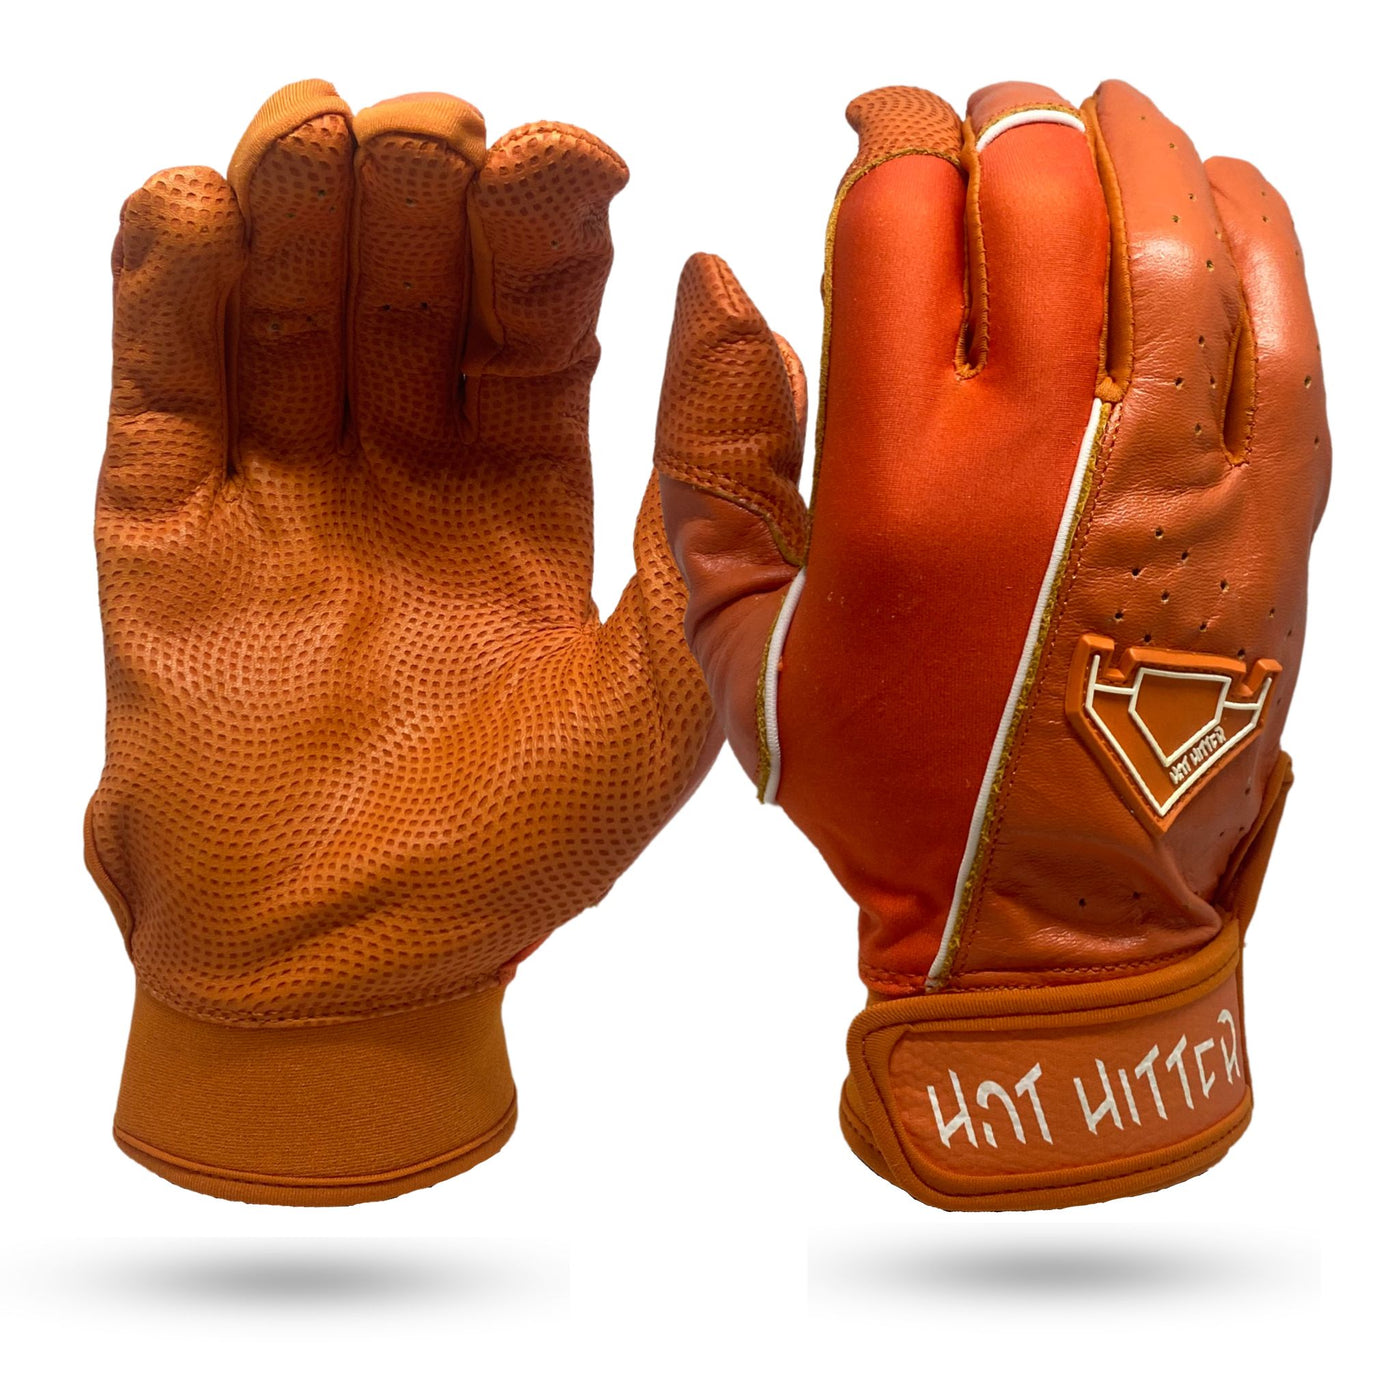 Extra Innings Batting Gloves Orange & White